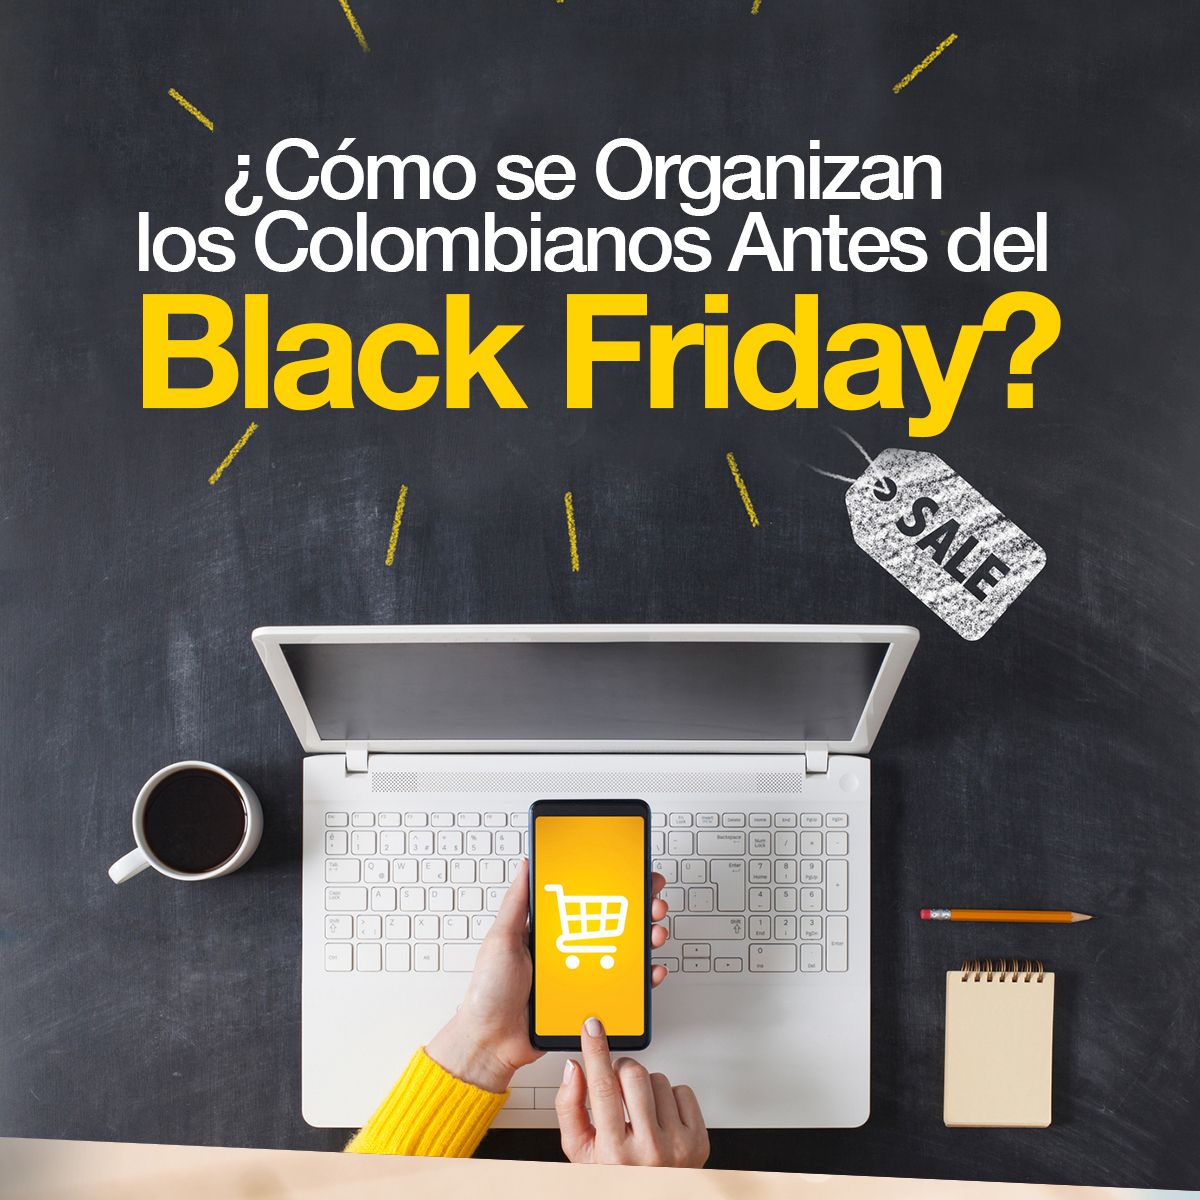 ¿Cómo se Organizan los Colombianos Antes del Black Friday?